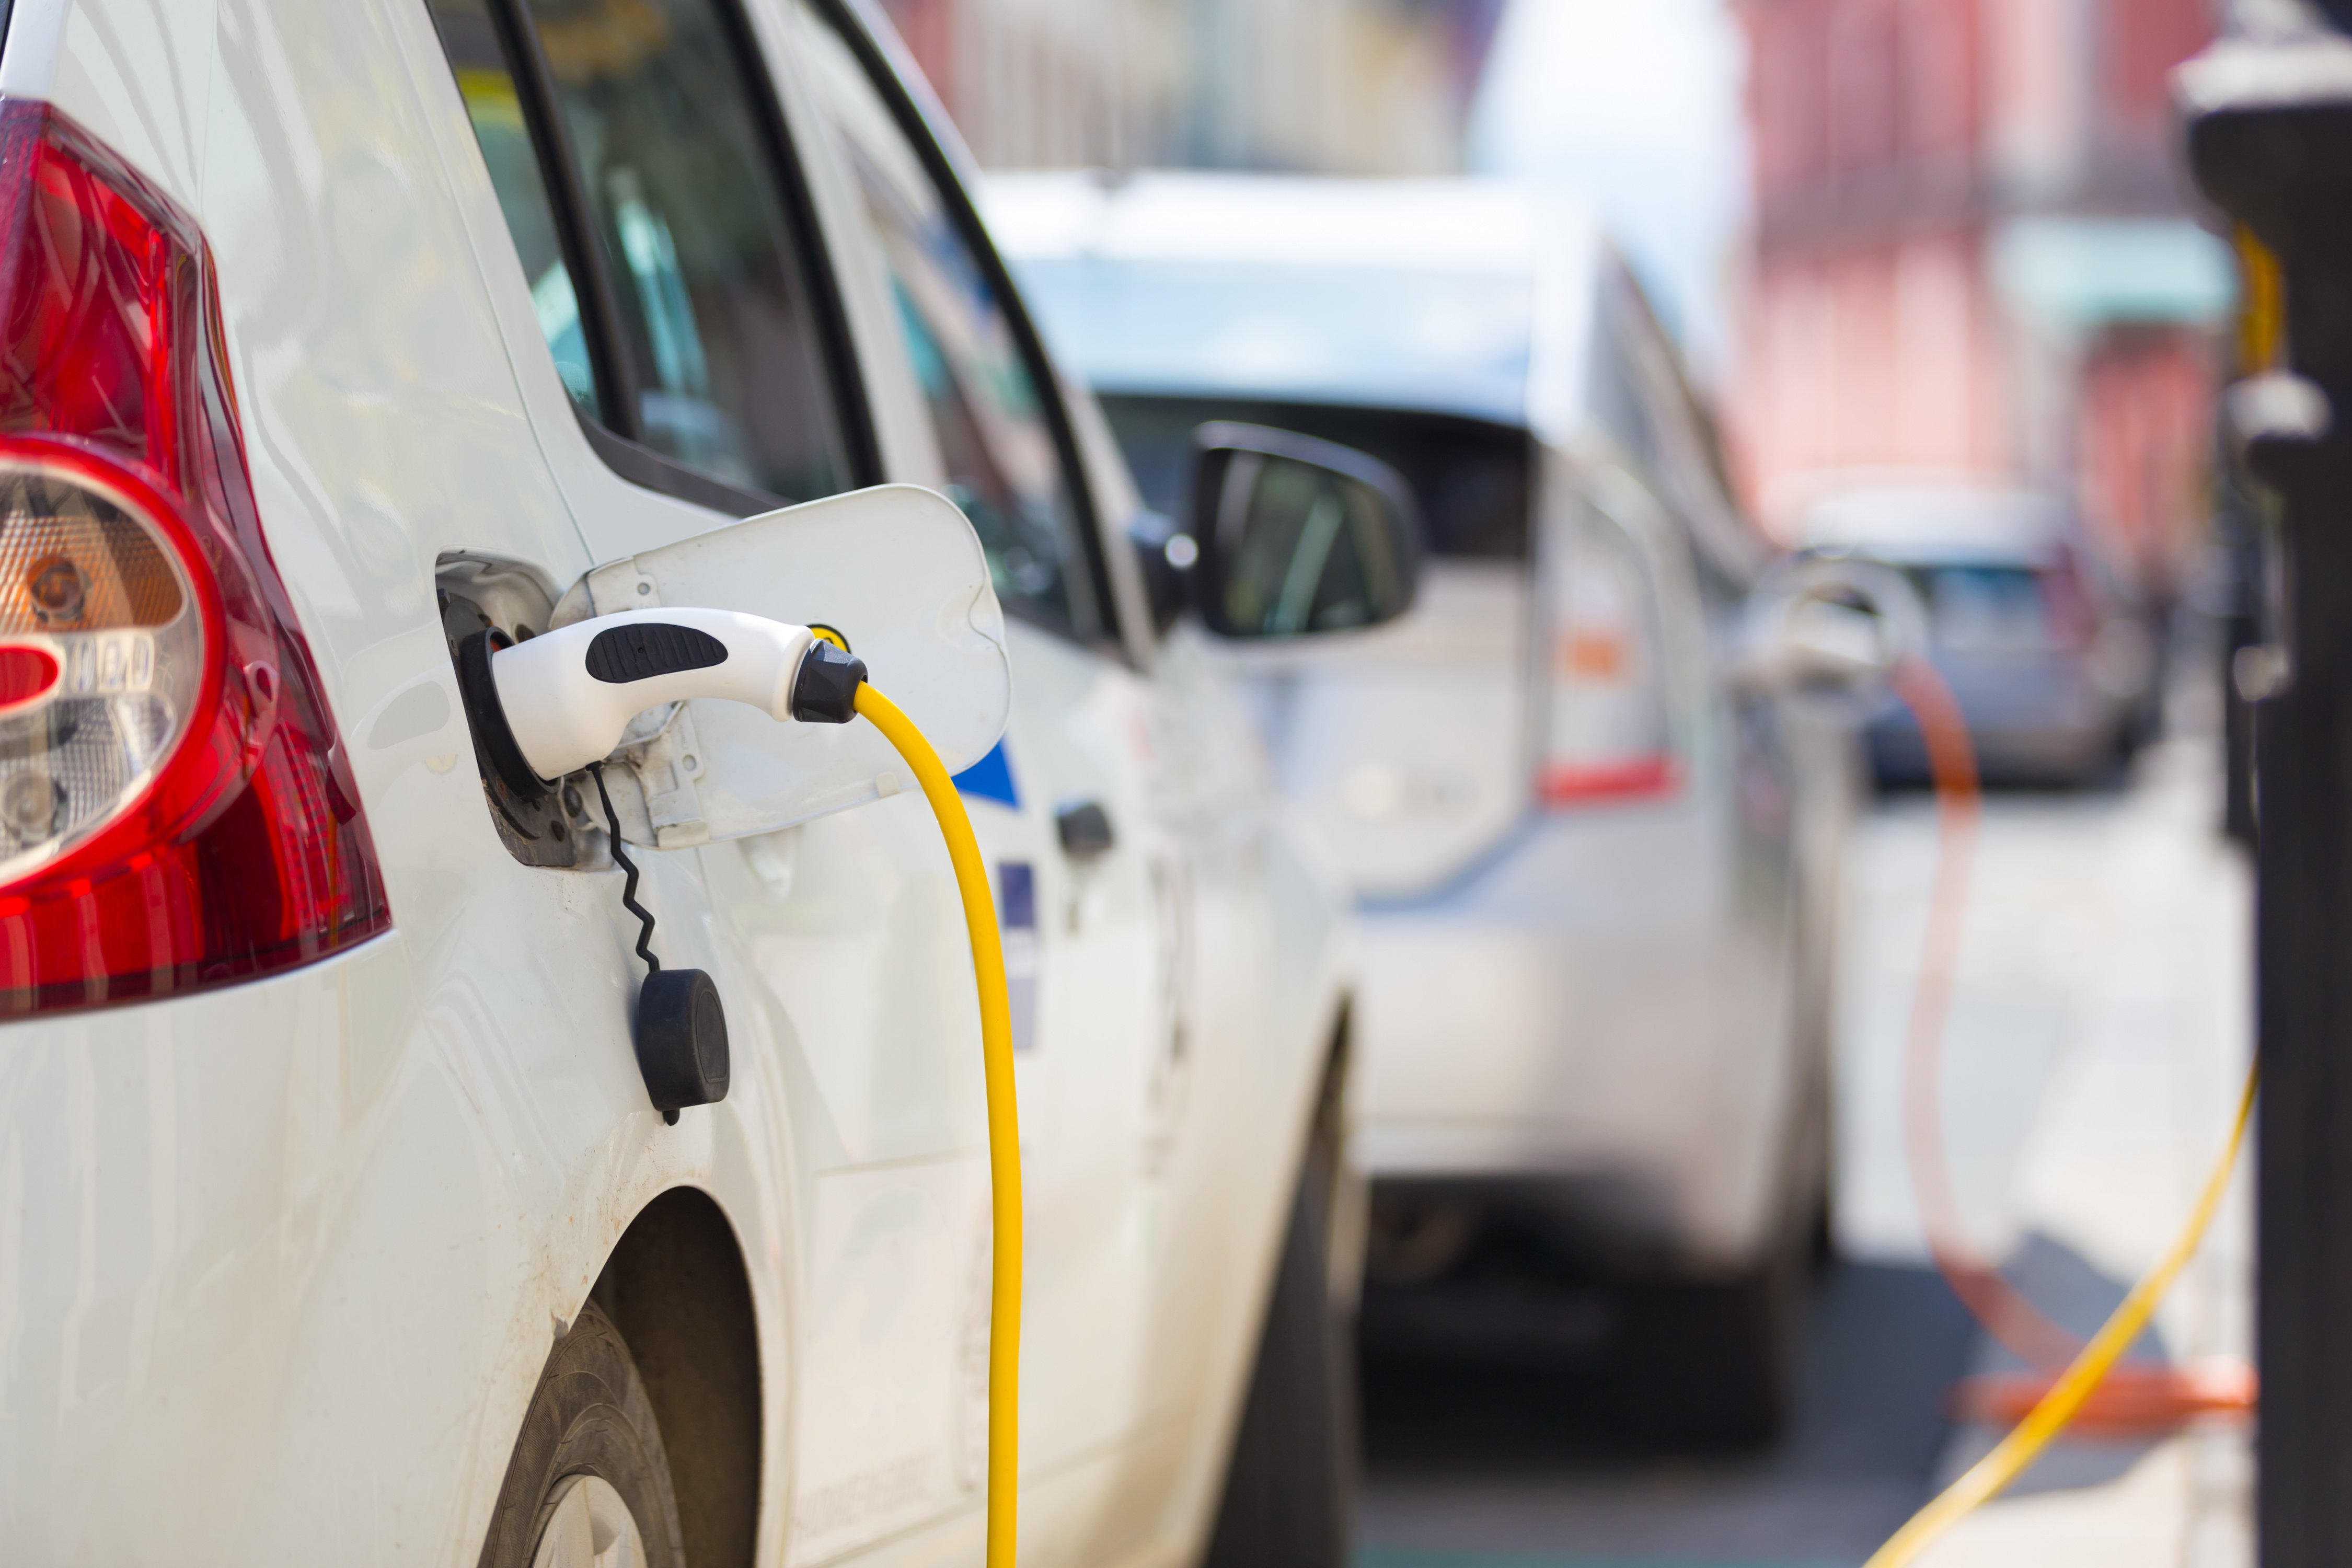 Elektromobily za každou cenu. Produkce emisí musí do roku 2030 automobilky snížit o 37,5 %